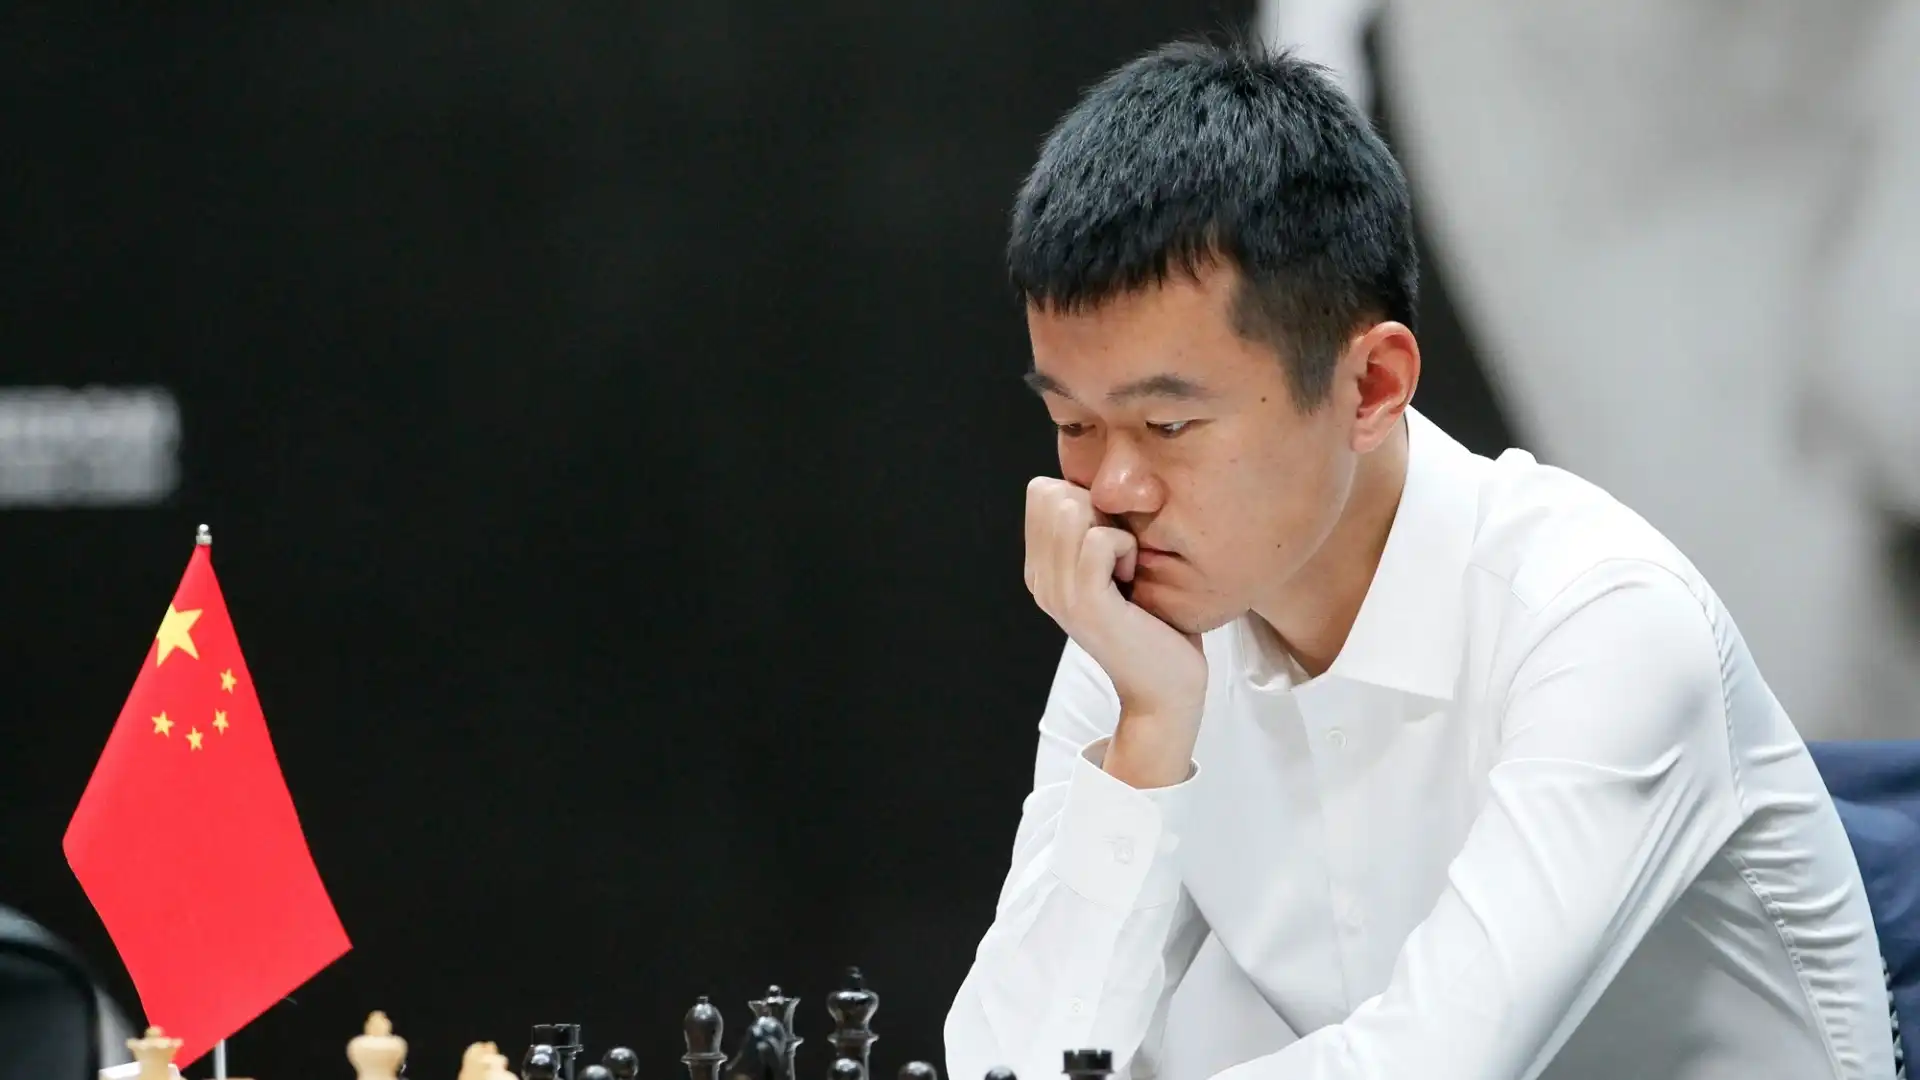 Ding Liren (Cina): patrimonio netto stimato 5 milioni di dollari. E' lo scacchista cinese che ha ottenuto il punteggio Elo più alto